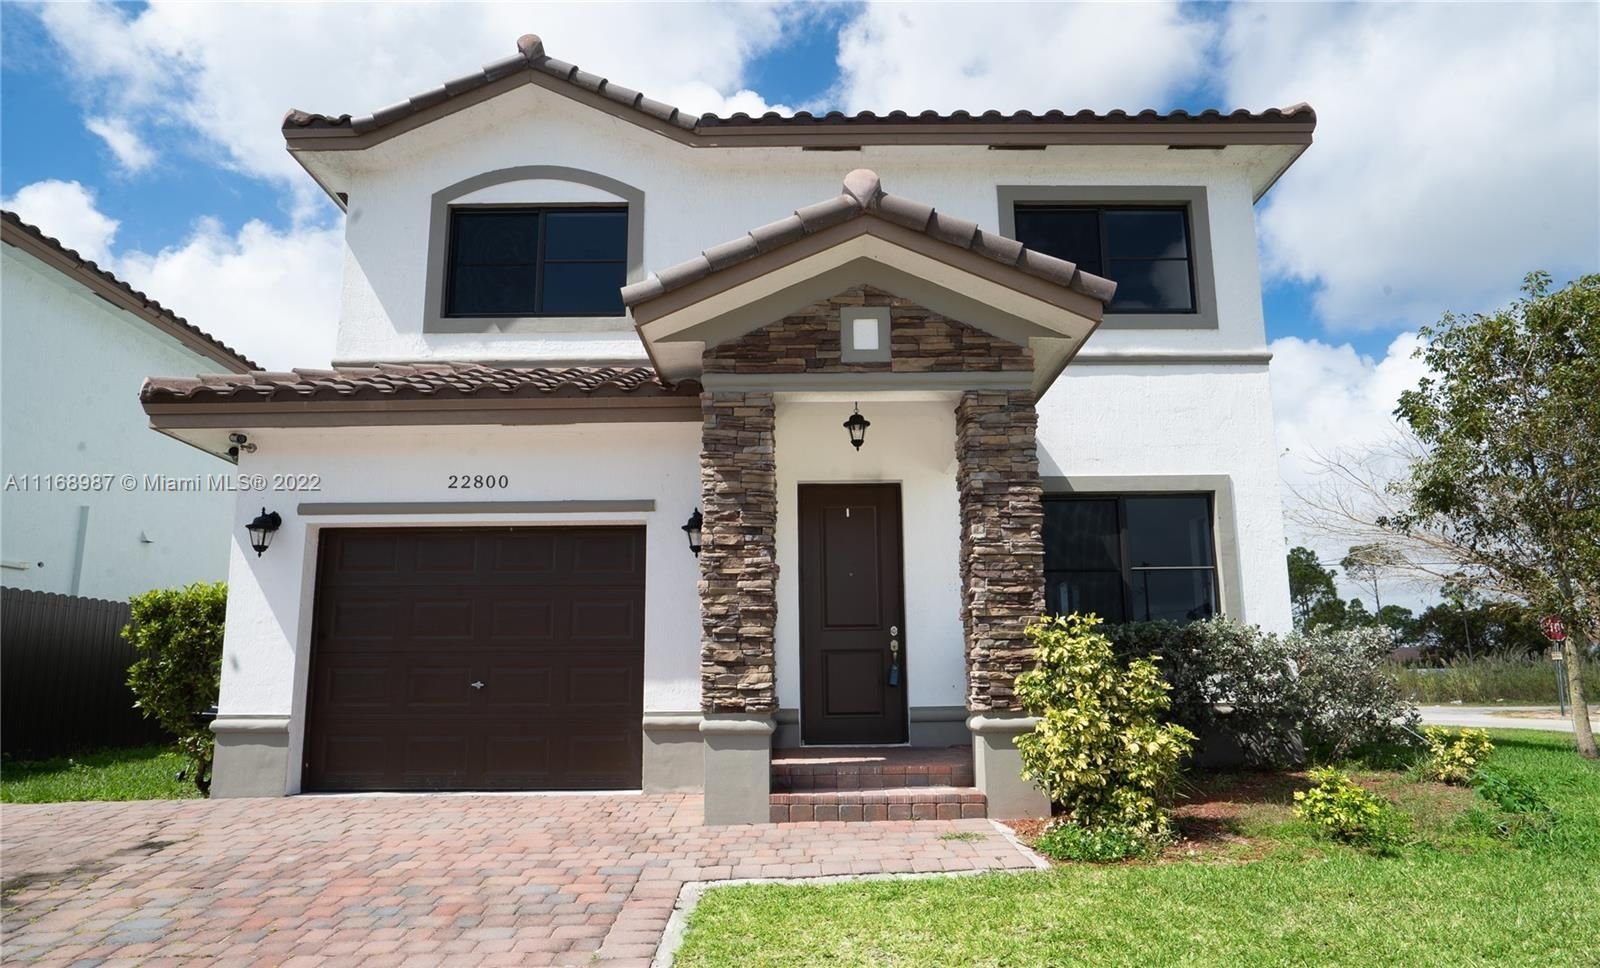 Real estate property located at 22800 117th Path, Miami-Dade County, Miami, FL